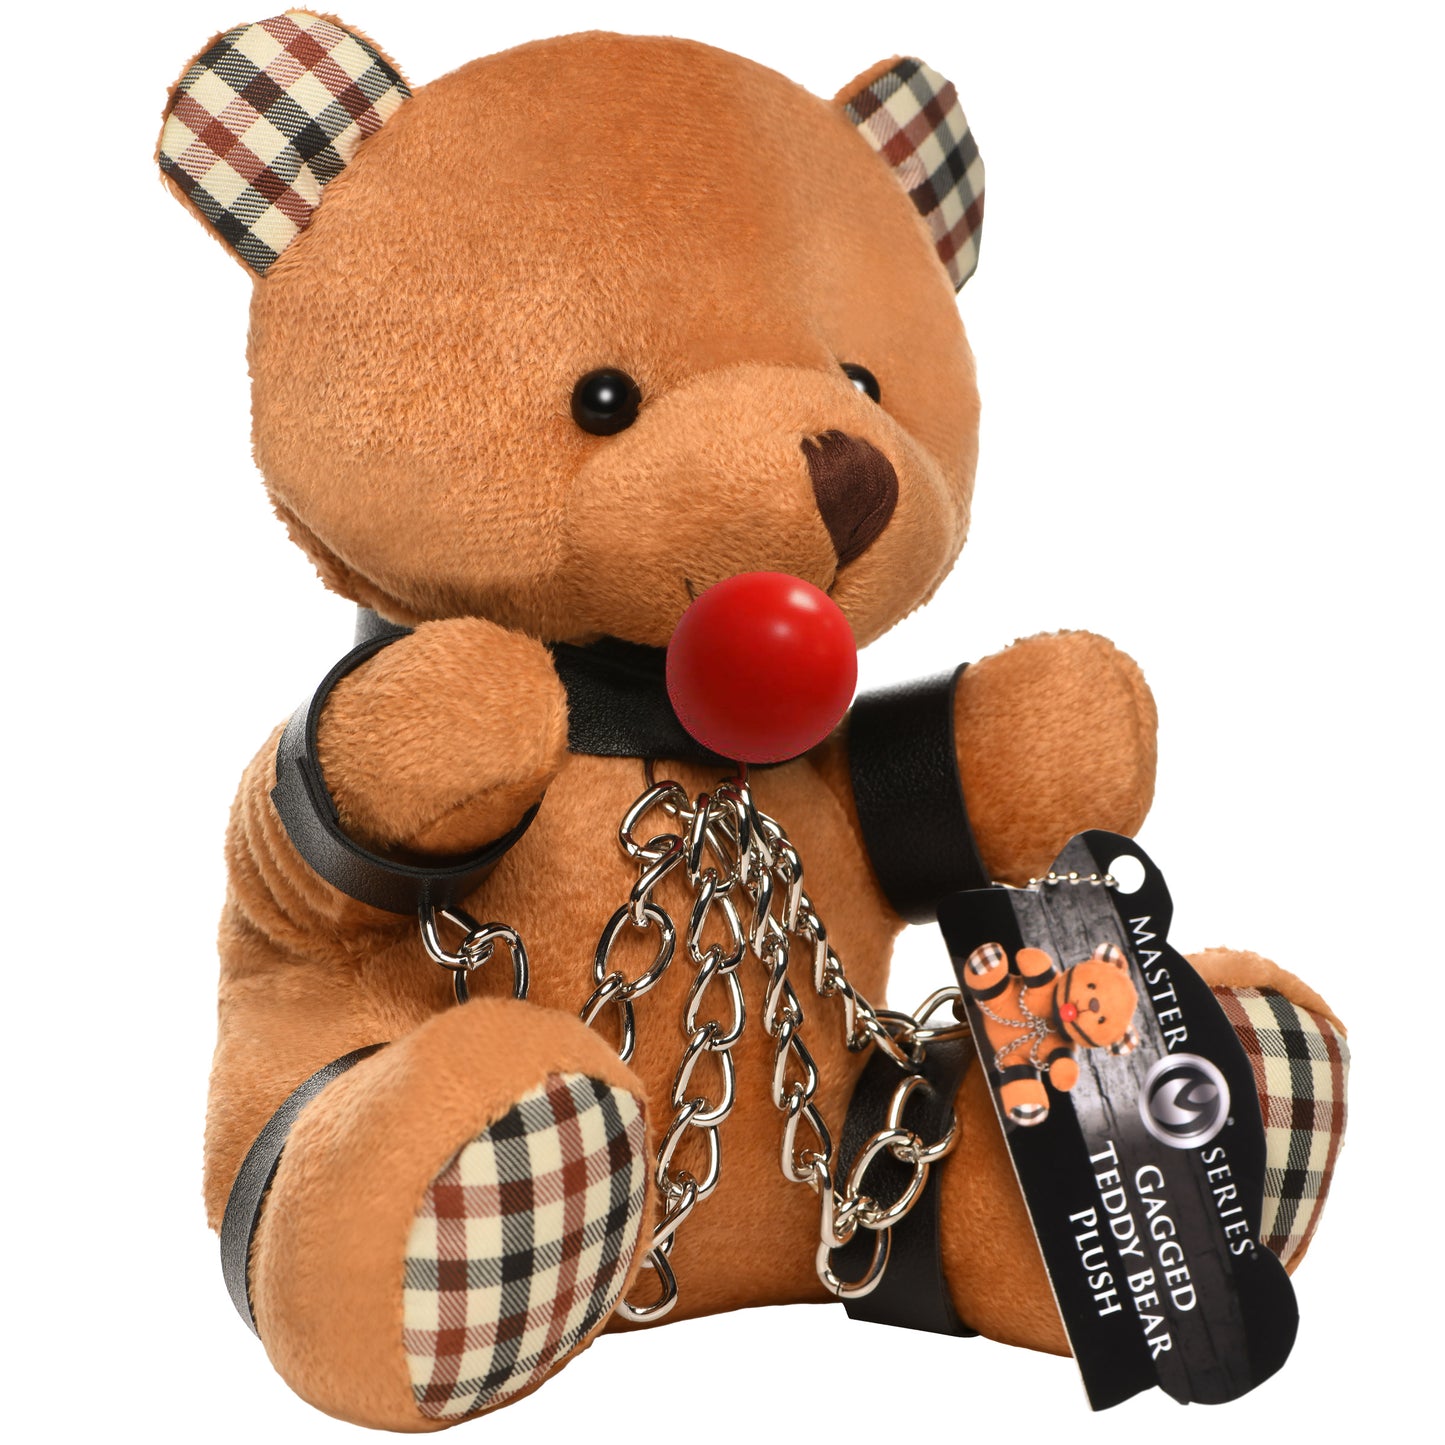 Gagged Bondage Teddy Bear